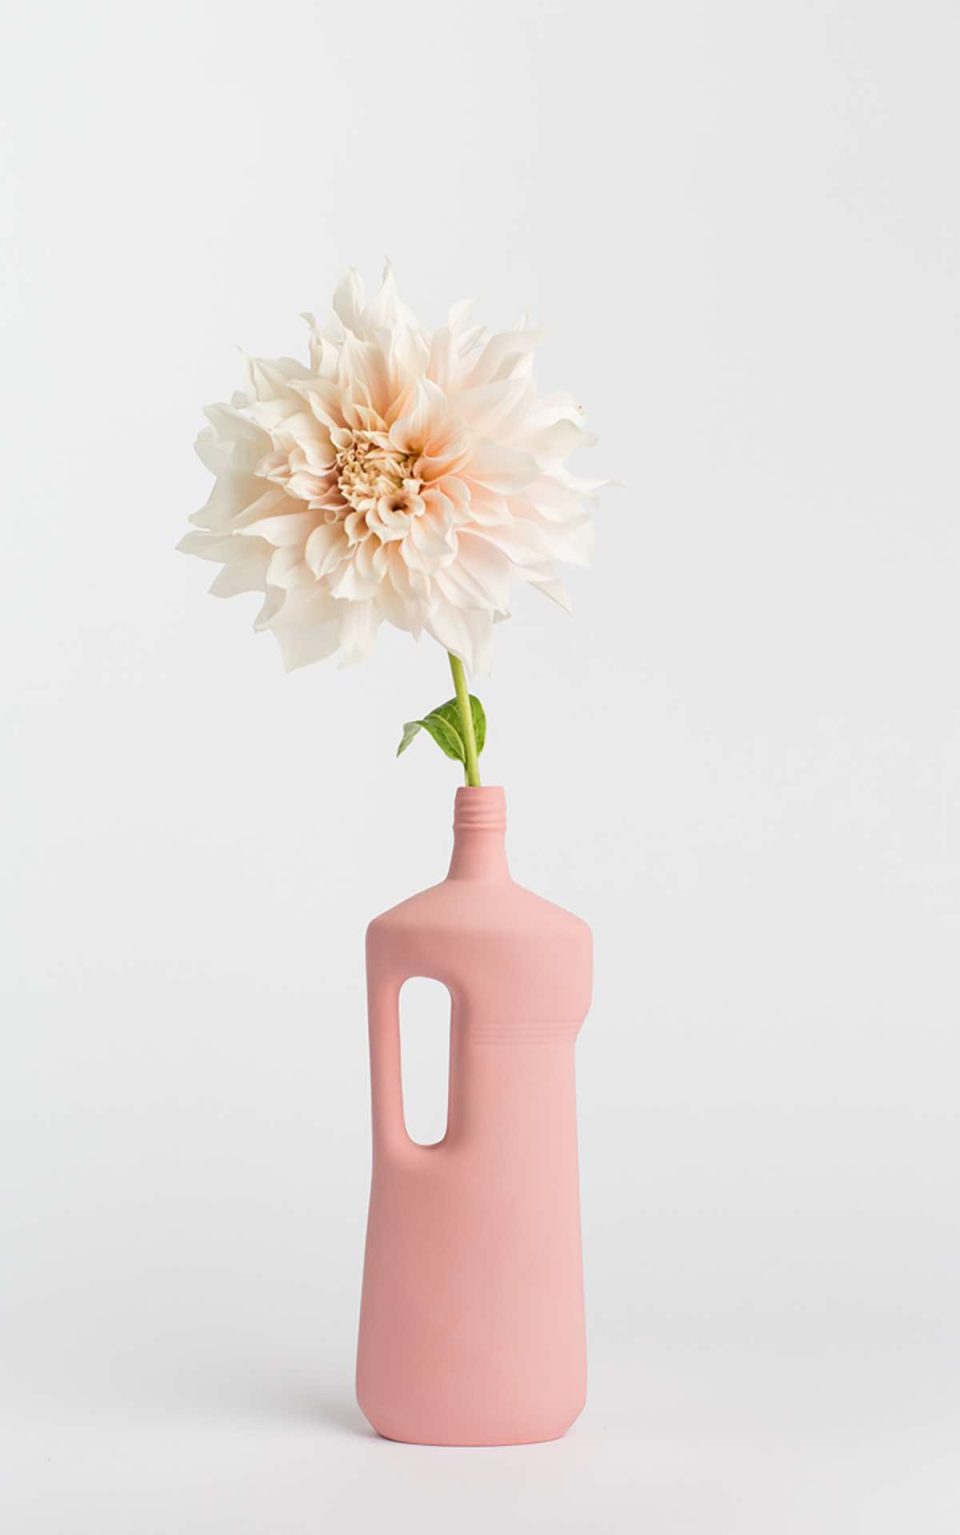 Prikazana je vaza brenda foekje fleur u svijetlo ružićastoj boji ispred sive pozadine. Vaza ima oblik kontejnera za sredstvo za pranje suđa. U vazu je utaknut bijeli cvjet.